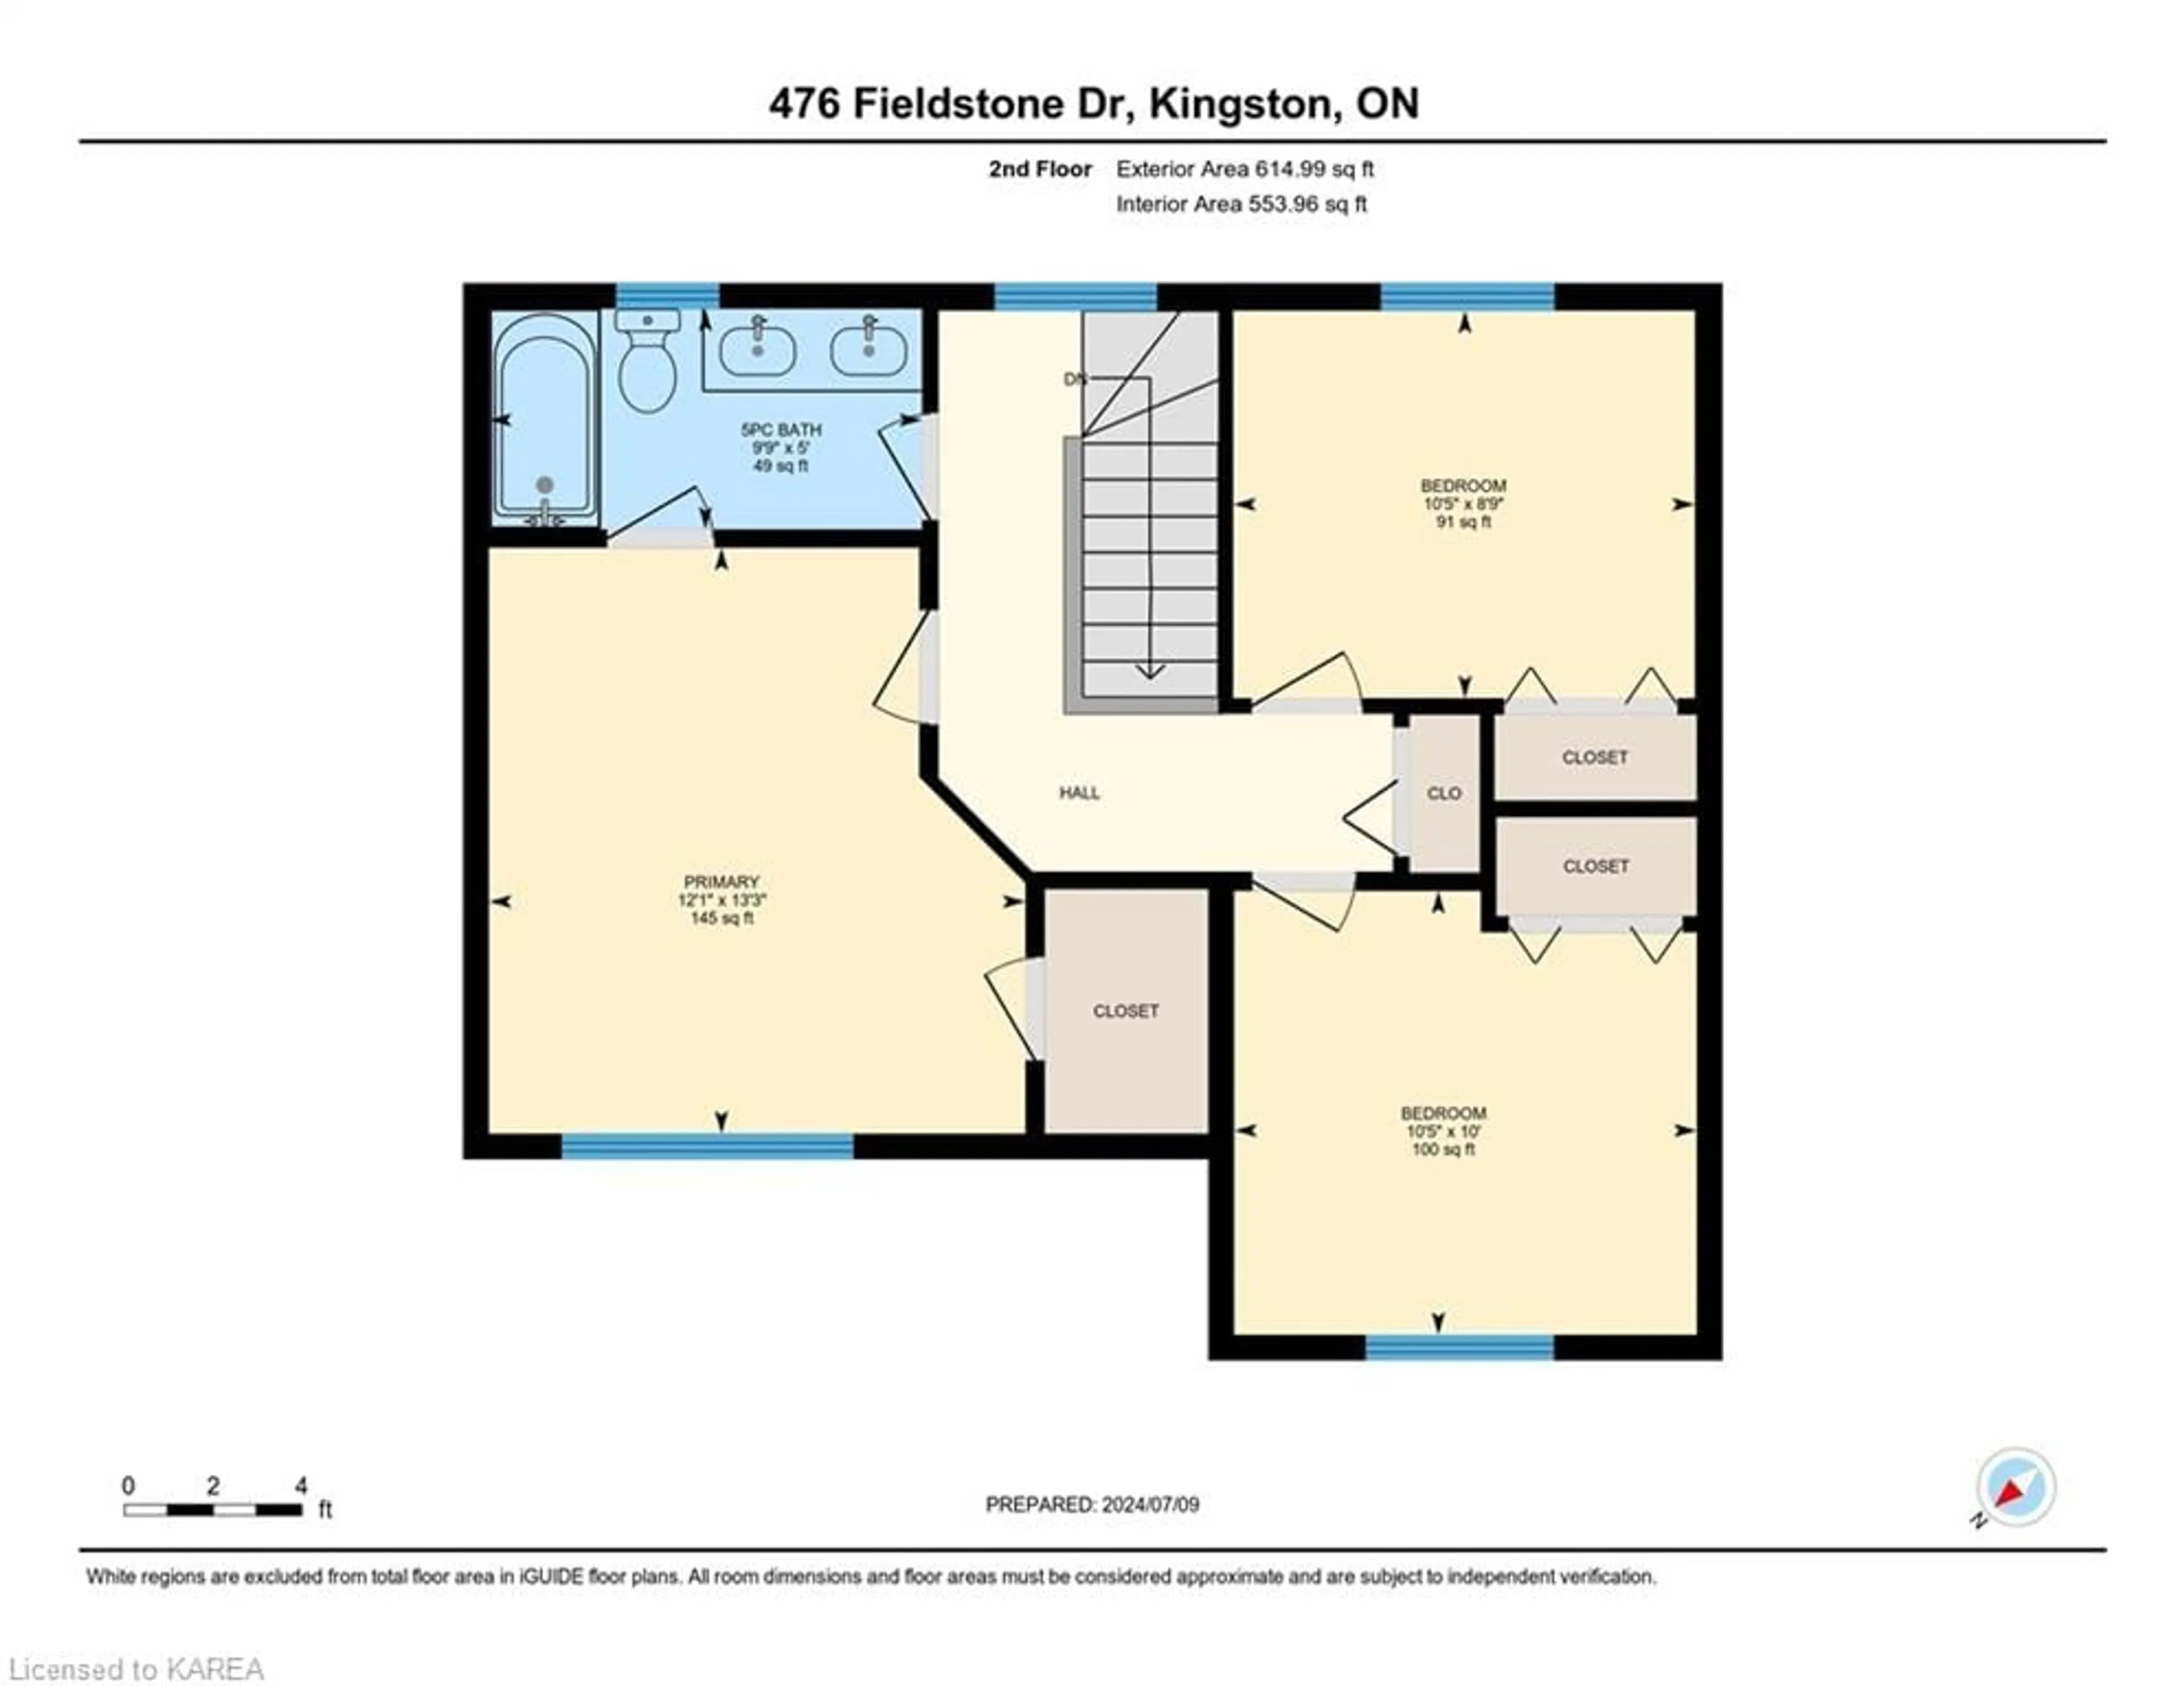 Floor plan for 476 Fieldstone Dr, Kingston Ontario K7K 7E4